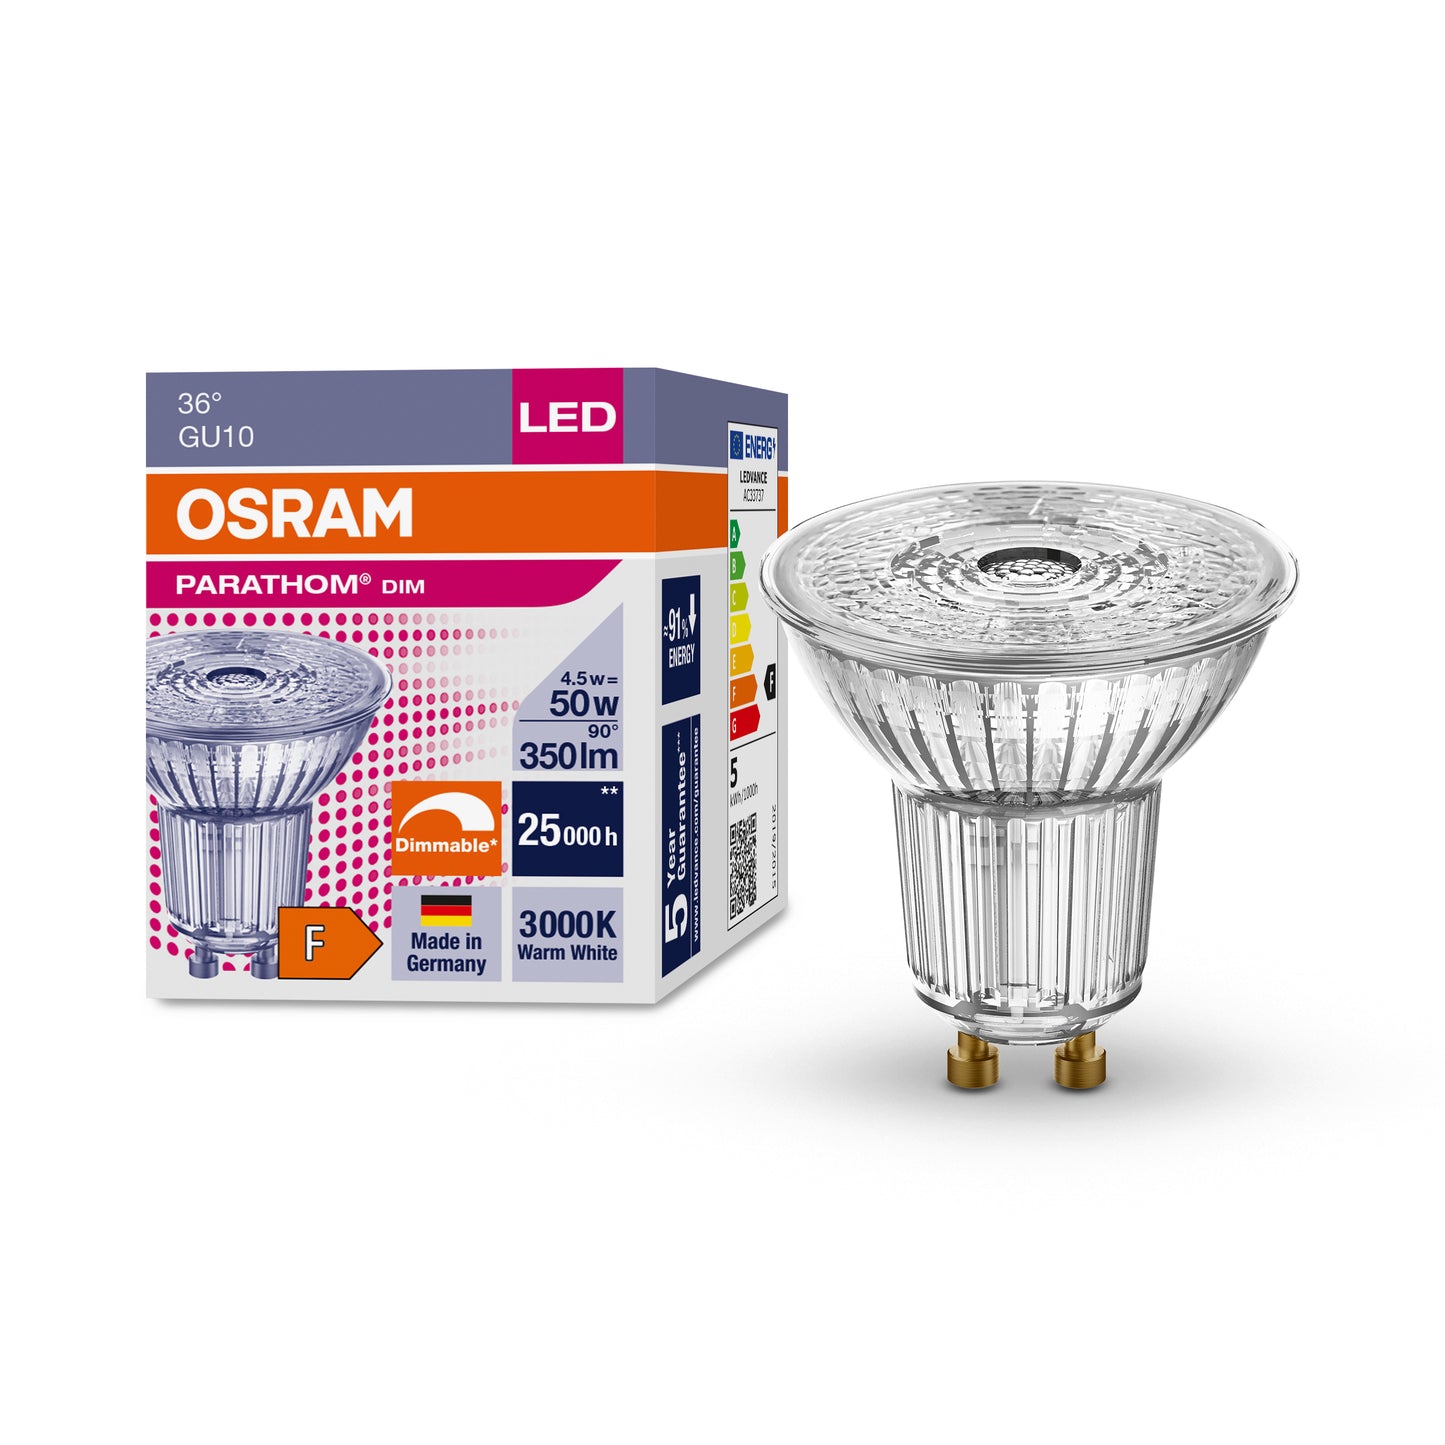 OSRAM LED GU10 4,5W = 50W Reflektor 350lm 36° Warmweiß 3000K DIMMBAR